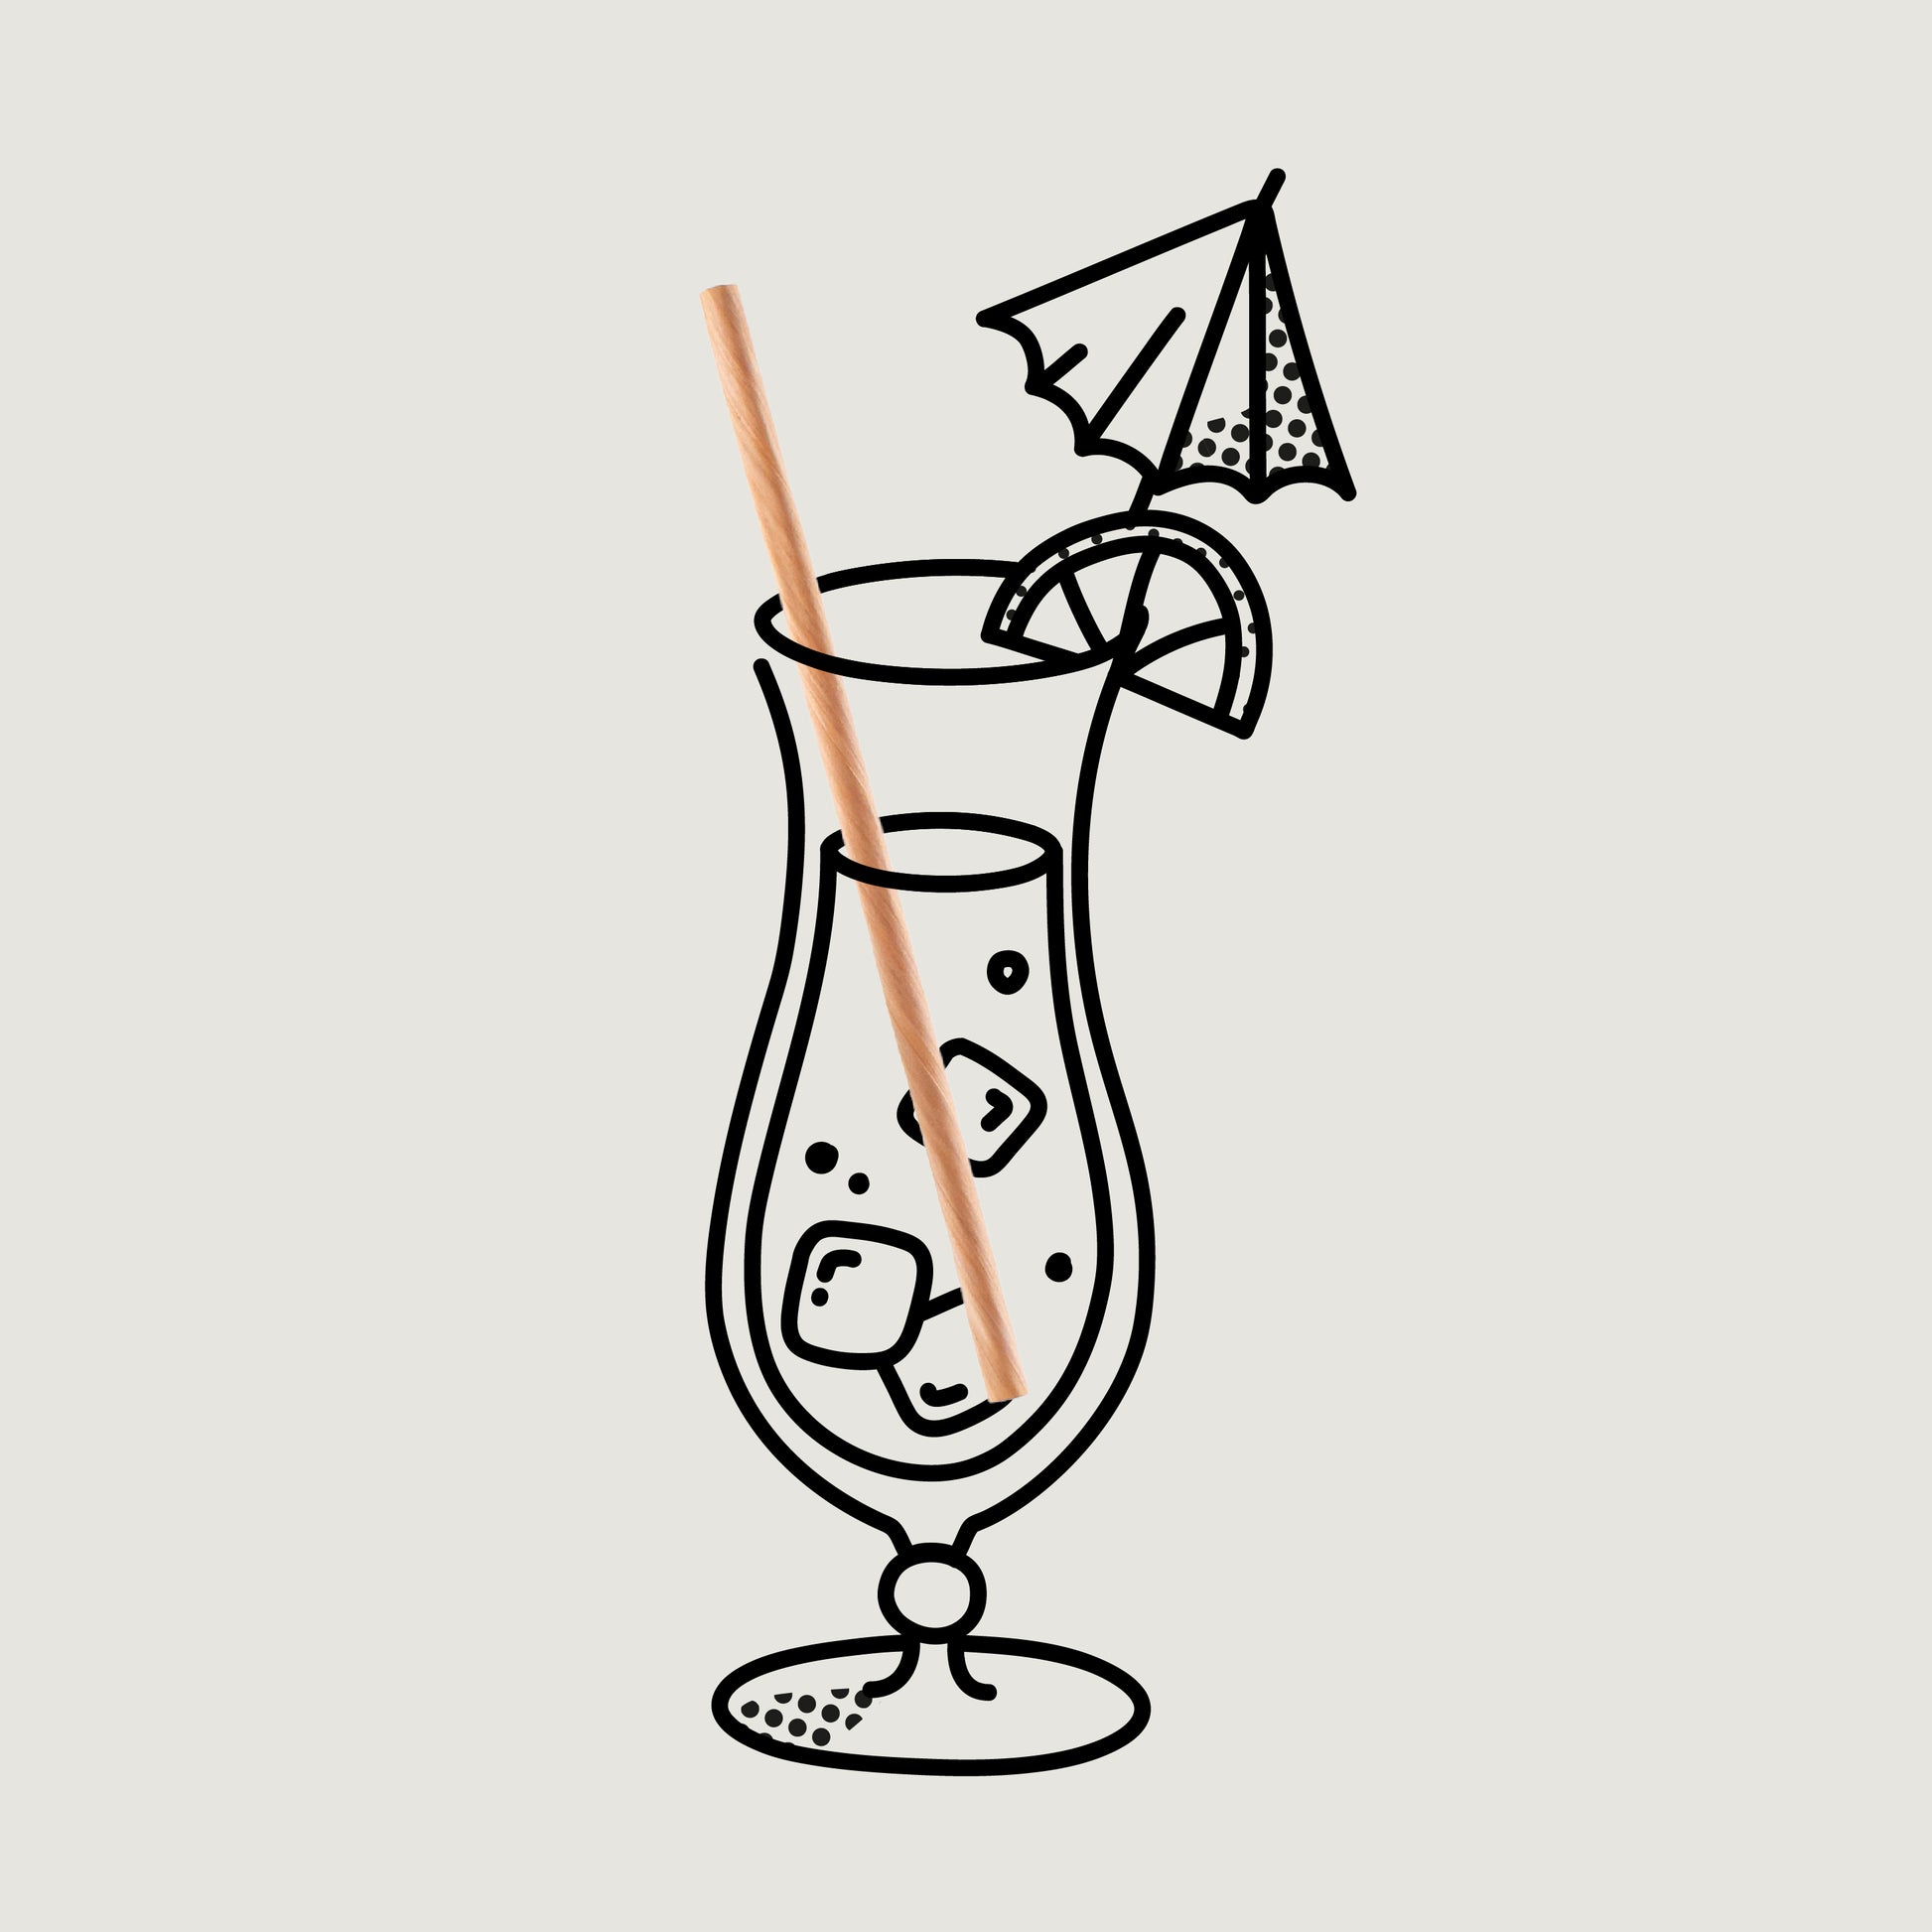 #IAMPLASTICFREE Trinkhalm aus Kiefernholz mit einem gezeichneten Glas, Schirmchen und Orangenscheibe.